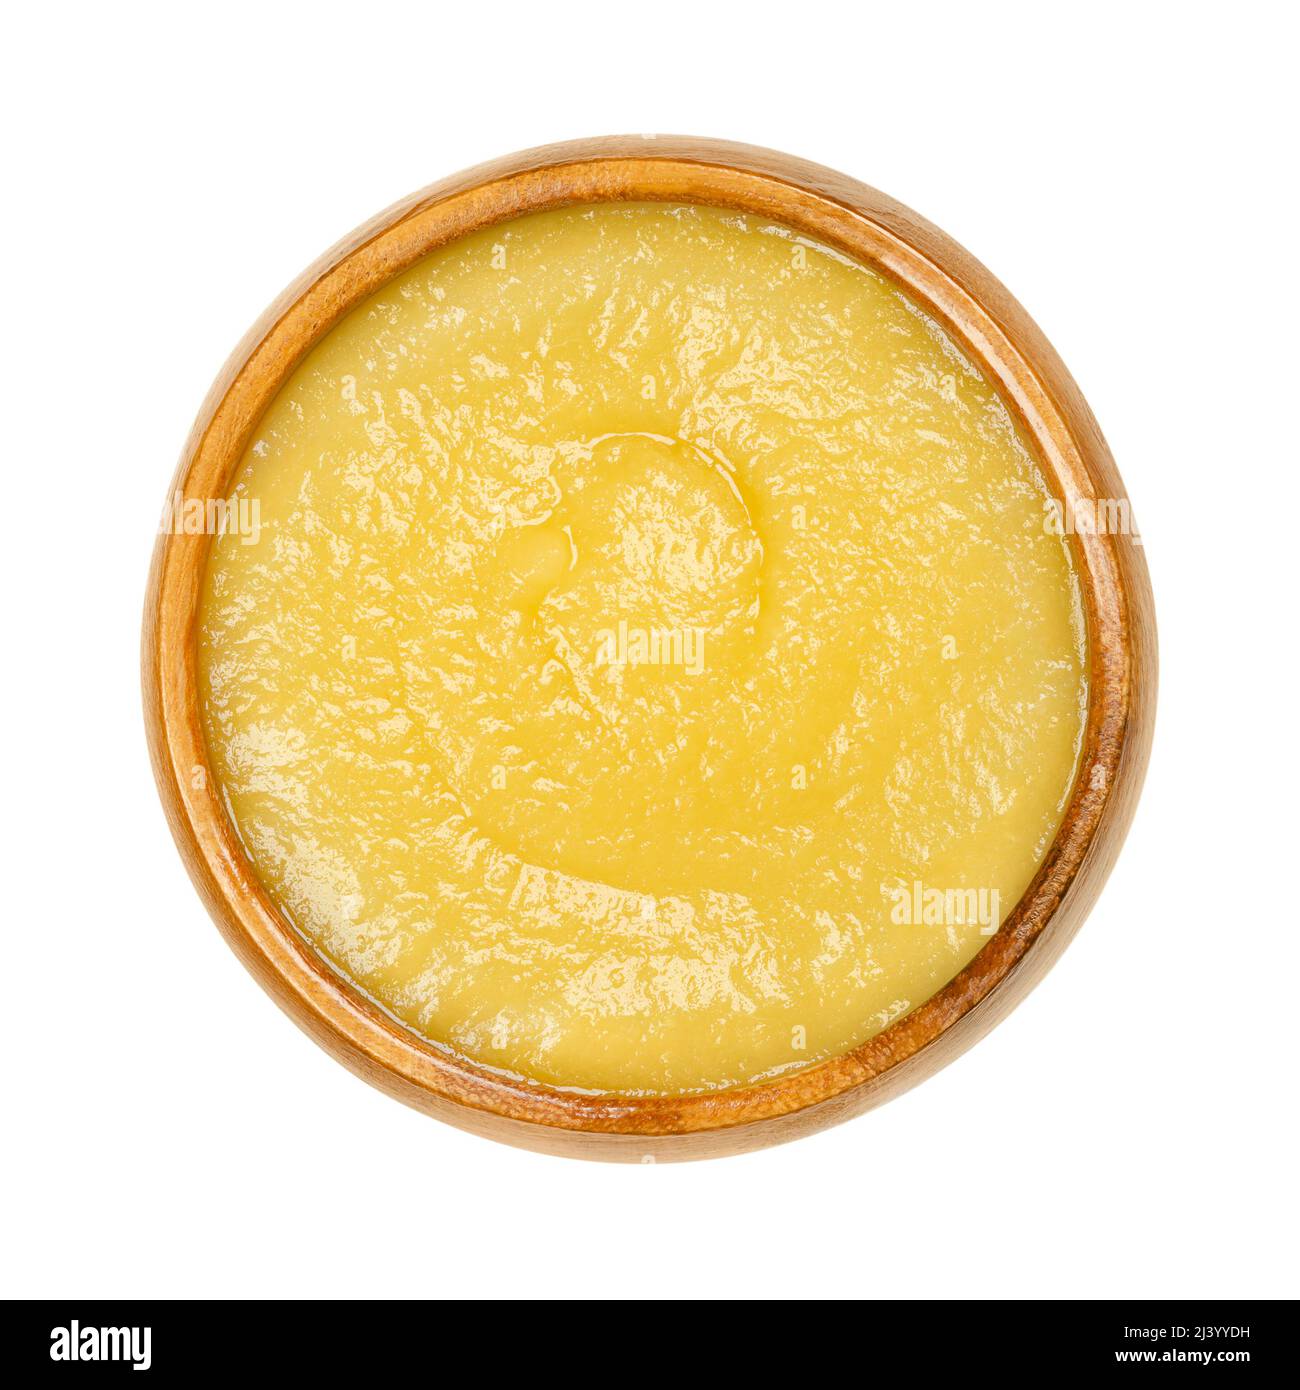 Salsa di mele in una ciotola di legno. Salsa di mele cotte e sbucciate, una salsa gialla. Foto Stock